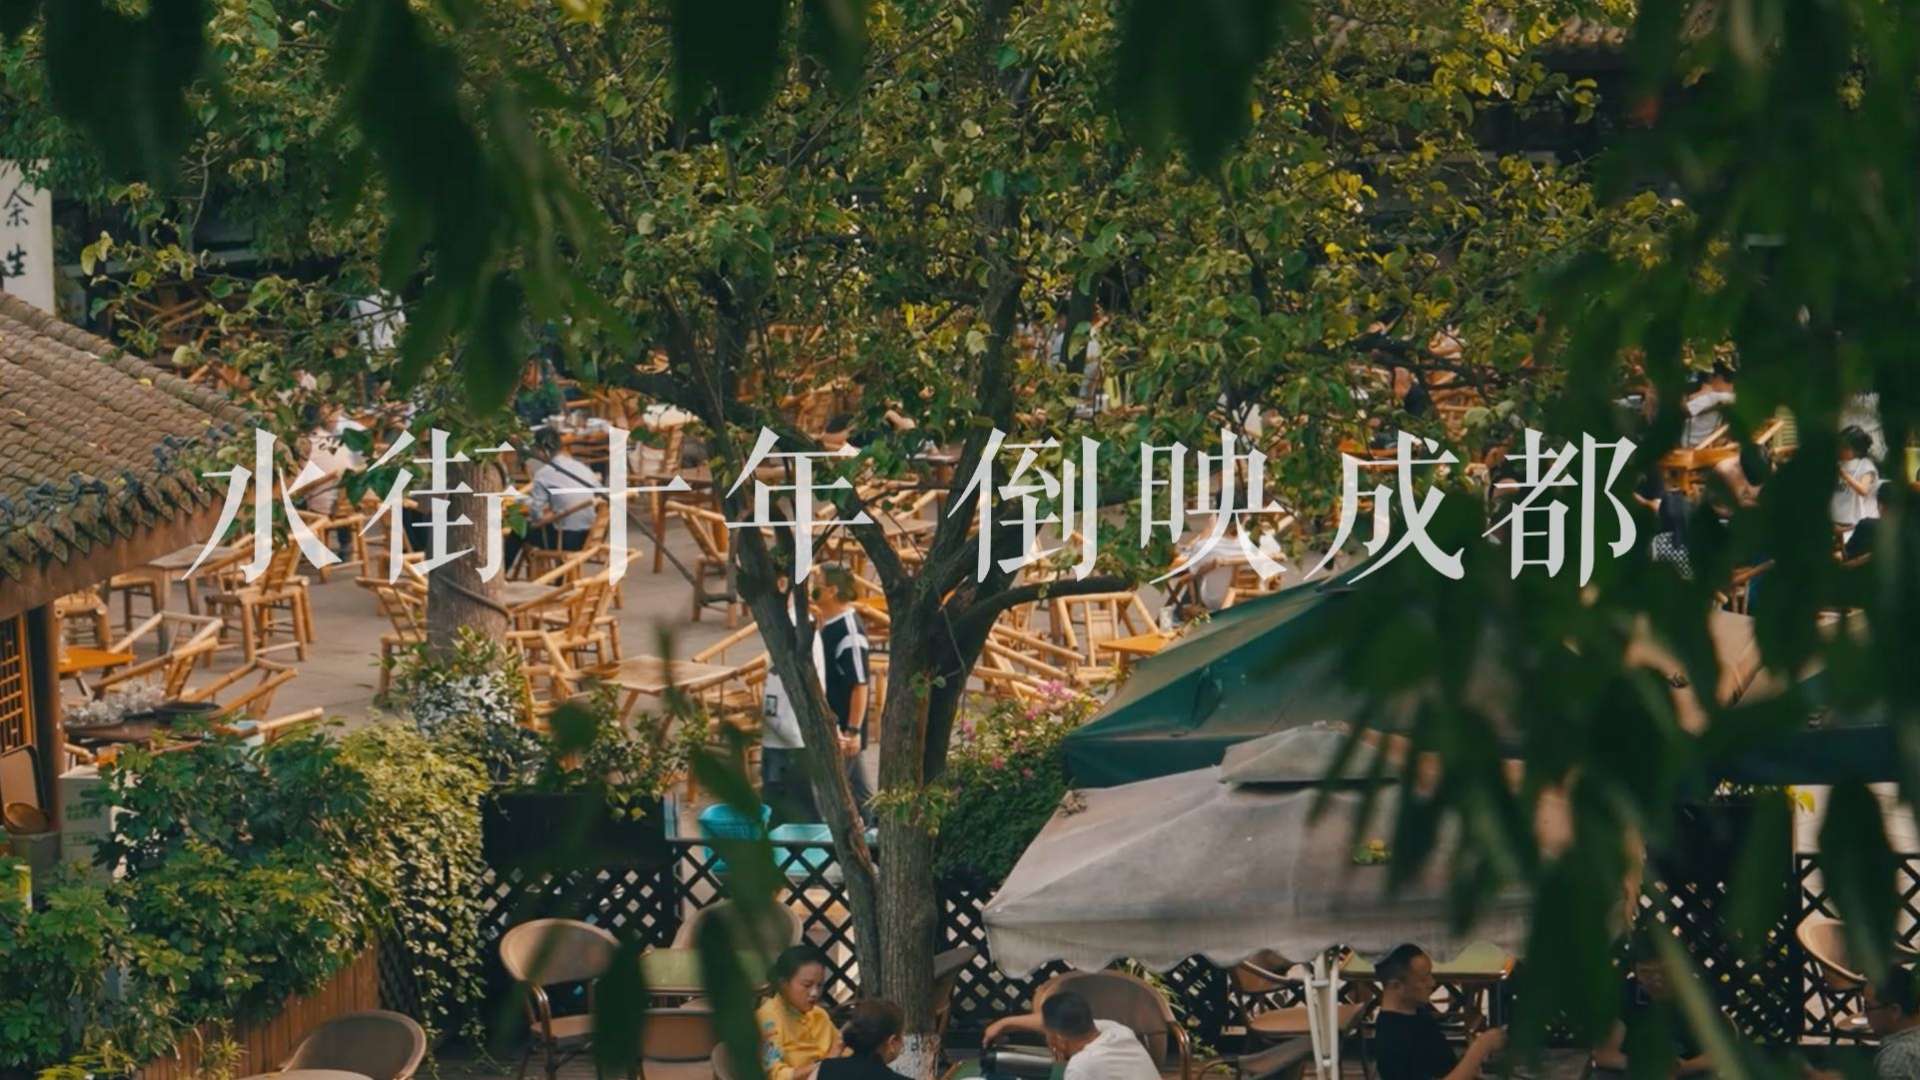 【水街十年】-铁像寺水街10周年庆